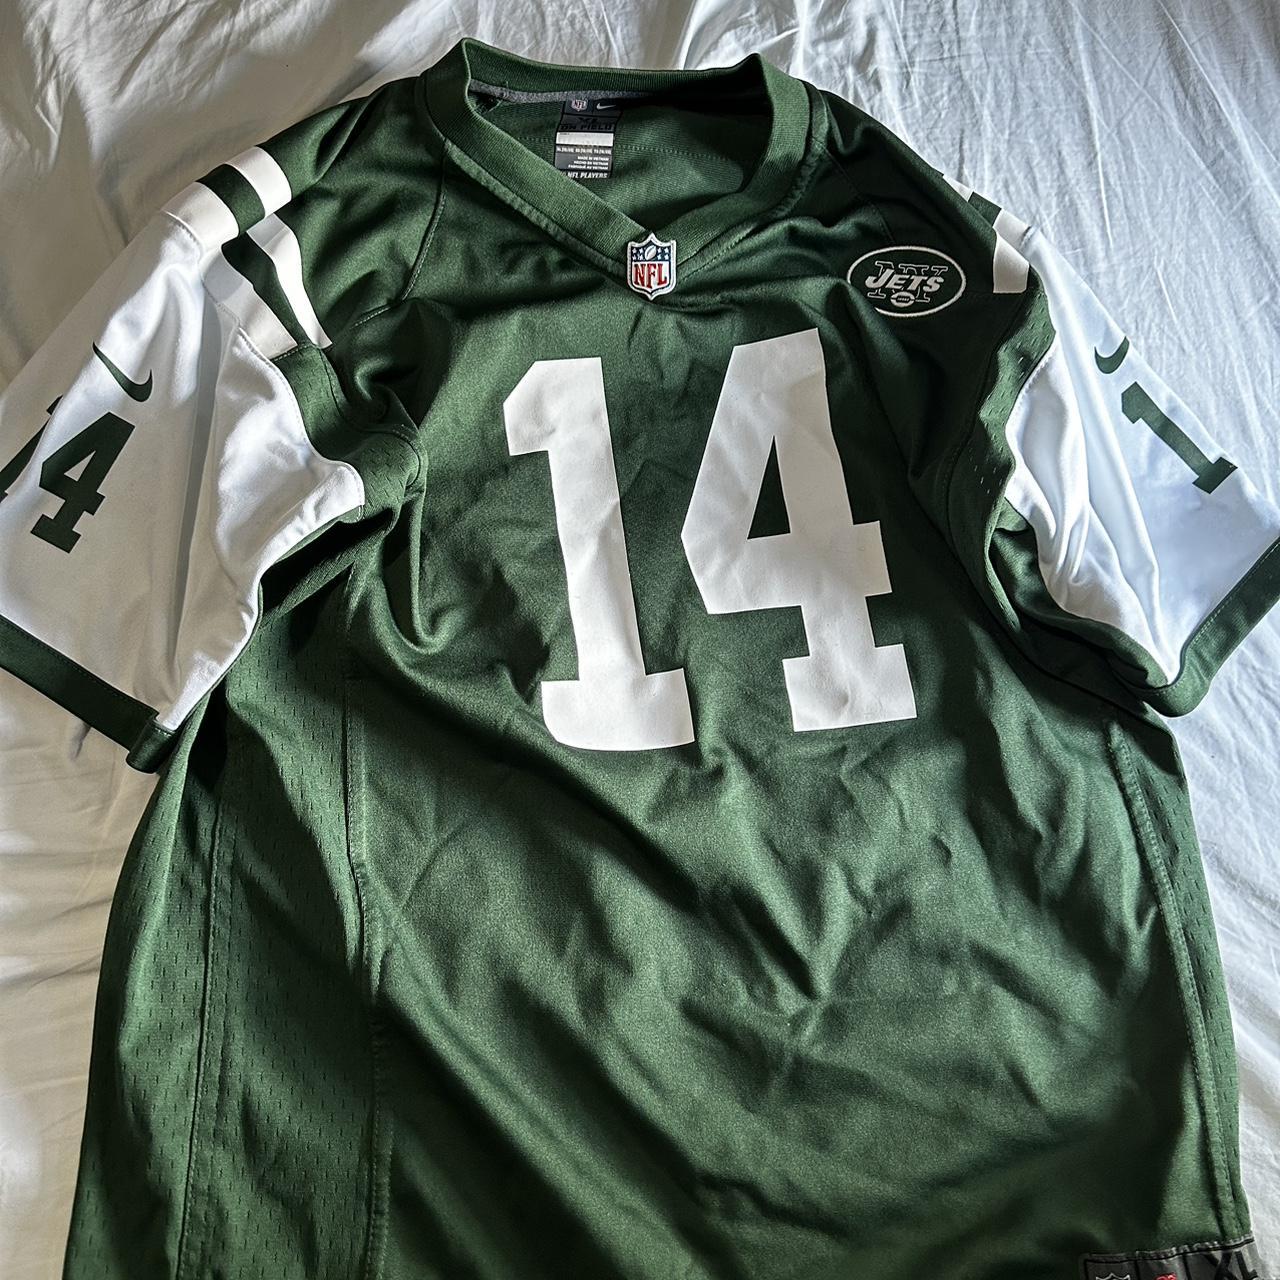 NFL Men's Shirt - Green - XL